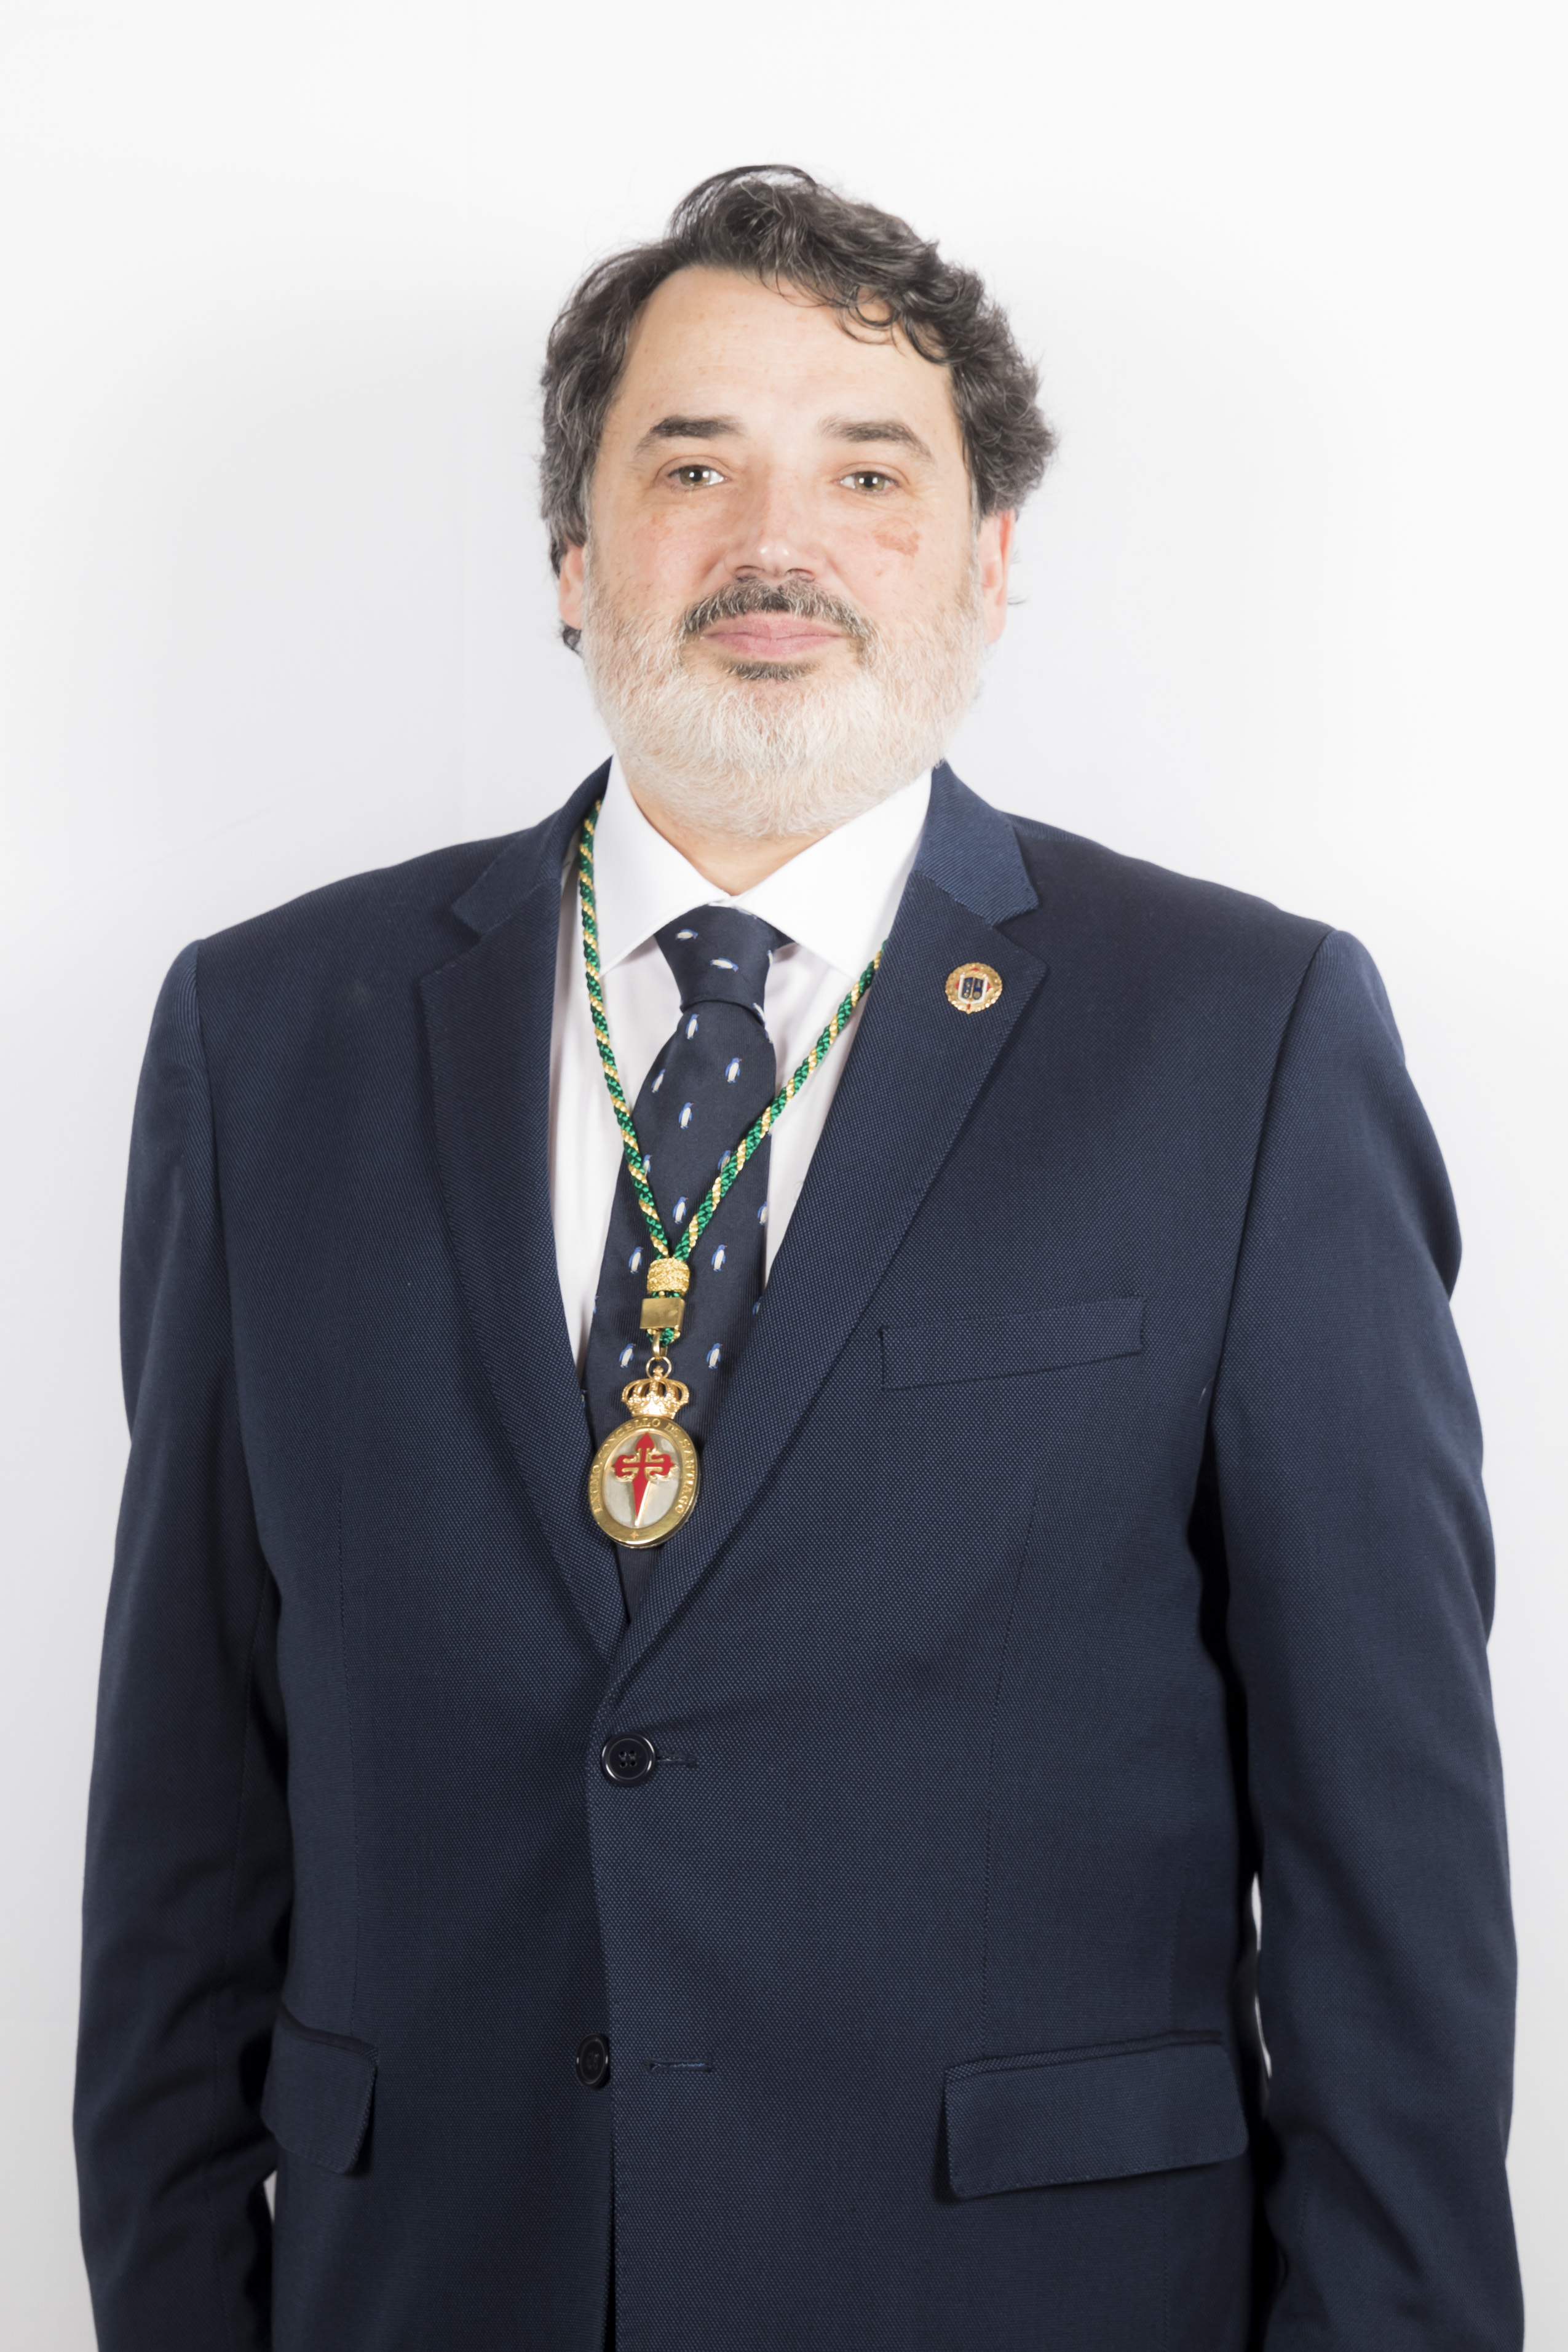 José Antonio Constenla Ramos